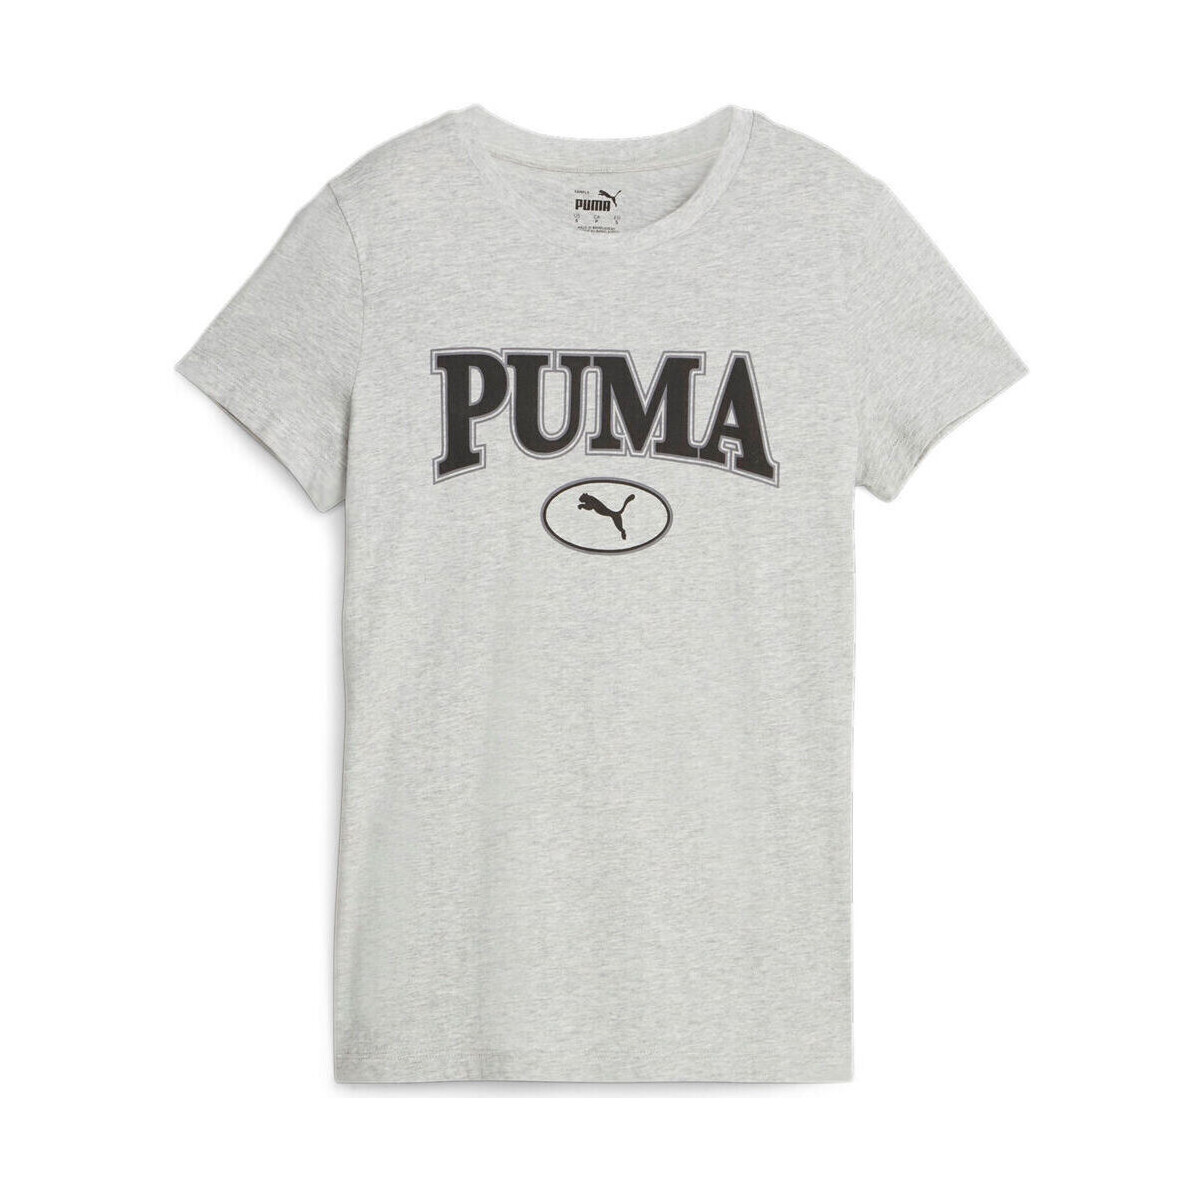 Vêtements Femme Polos manches courtes Puma SQUAD Graphic T Gris